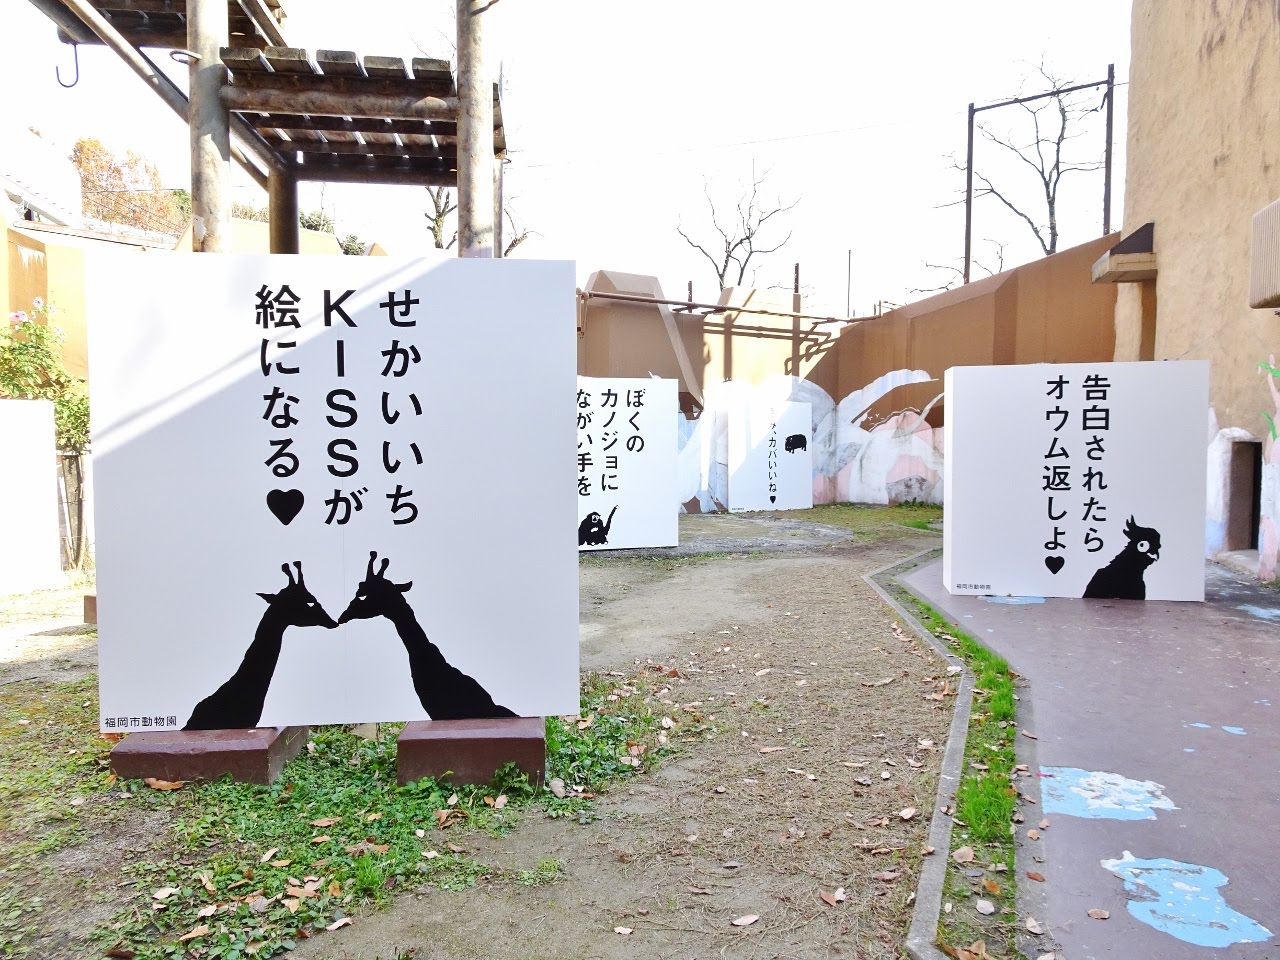 福岡市動物園ブログ 動物はアートだ ポスターが2年連続福岡広告協会賞の金賞を受賞 18福岡広告フェア で紹介されます